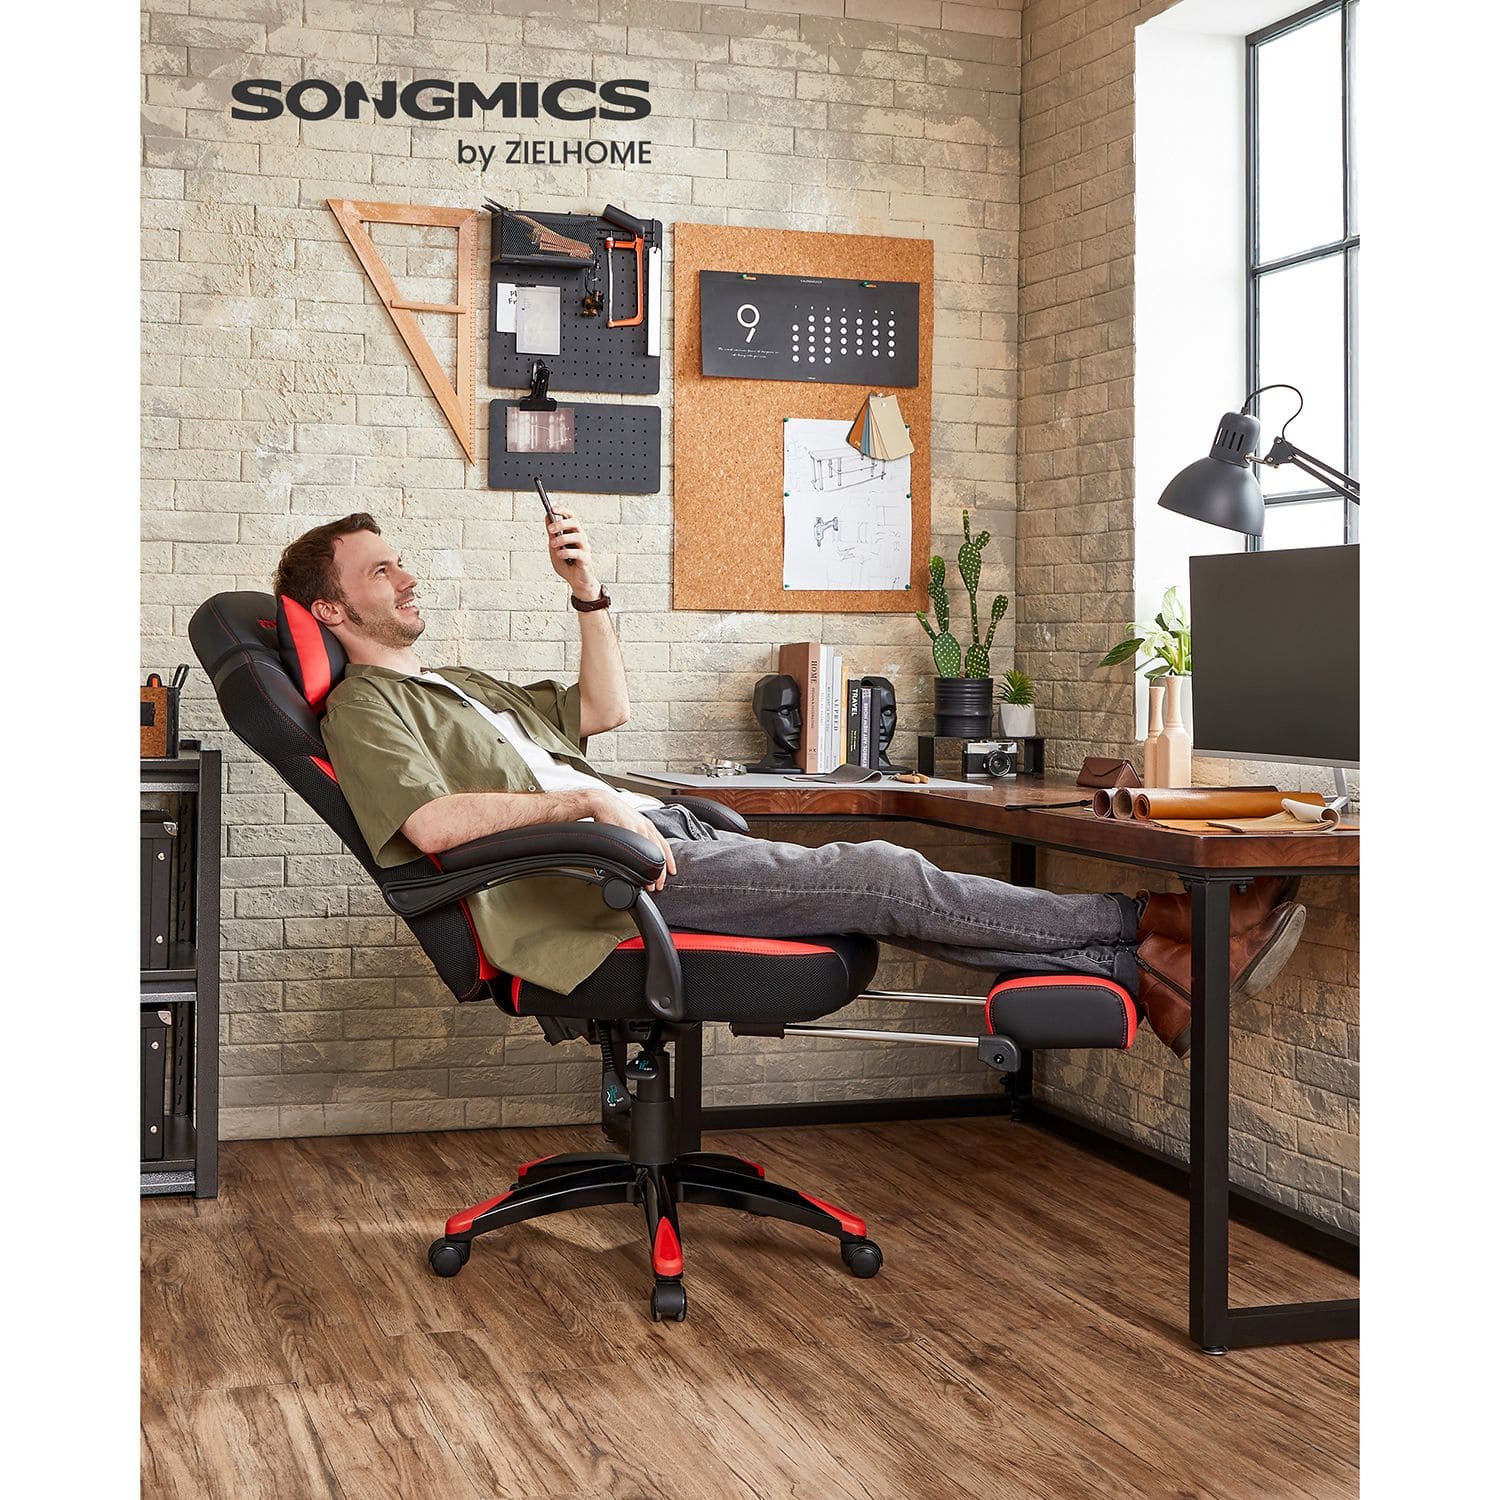 Chaise de jeu avec repose-pieds, chaise de bureau, design ergonomique, appui-tête réglable, peut être chargée jusqu'à 150 kg